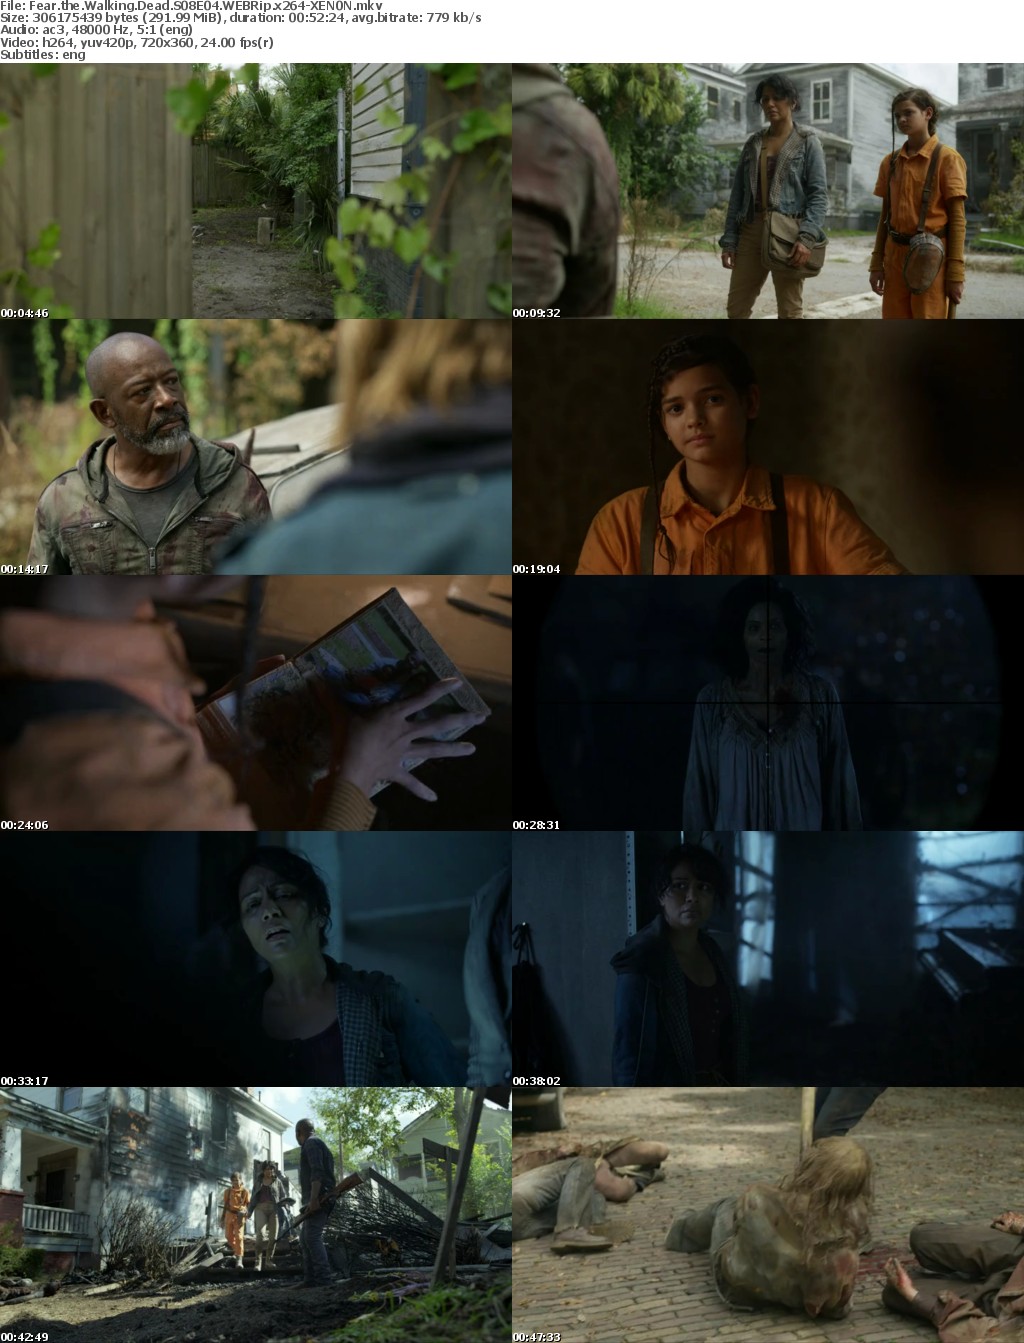 Fear the Walking Dead S08E04 WEBRip x264-XEN0N